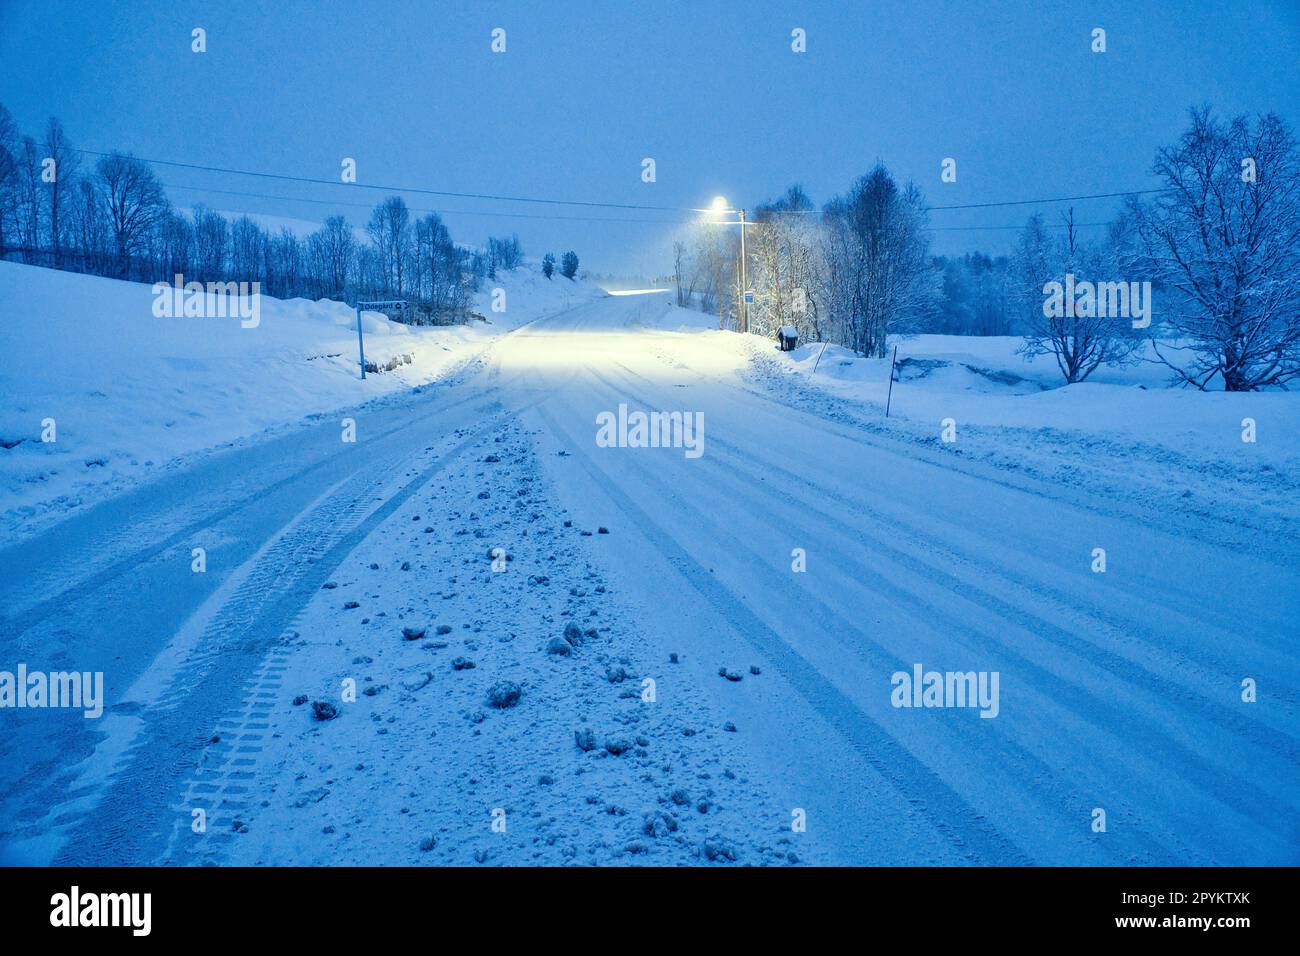 Paysage d'hiver en Scandinavie. Route enneigée avec arbres enneigés. Sur la route illumine un feu de rue. Photo de paysage du nord Banque D'Images